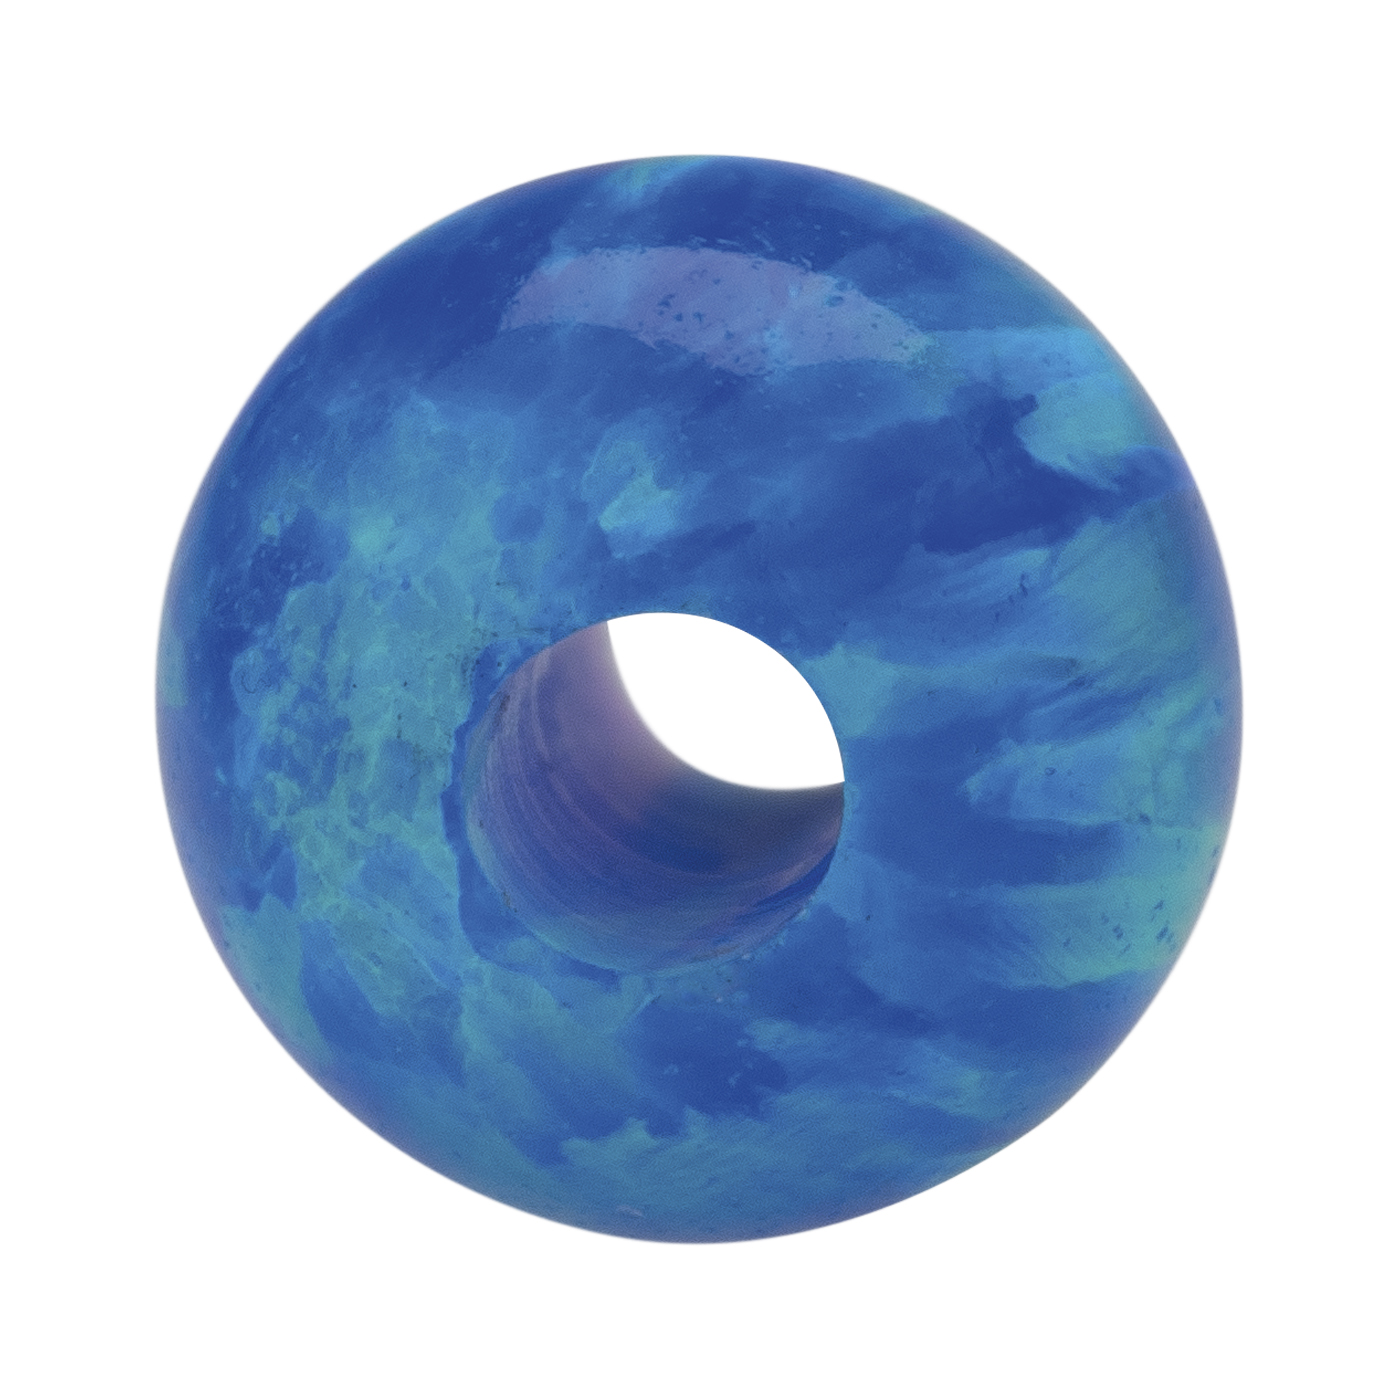 Opal Imitation Ball, Blue, ø 6 mm, Drilled Through - 1 piece